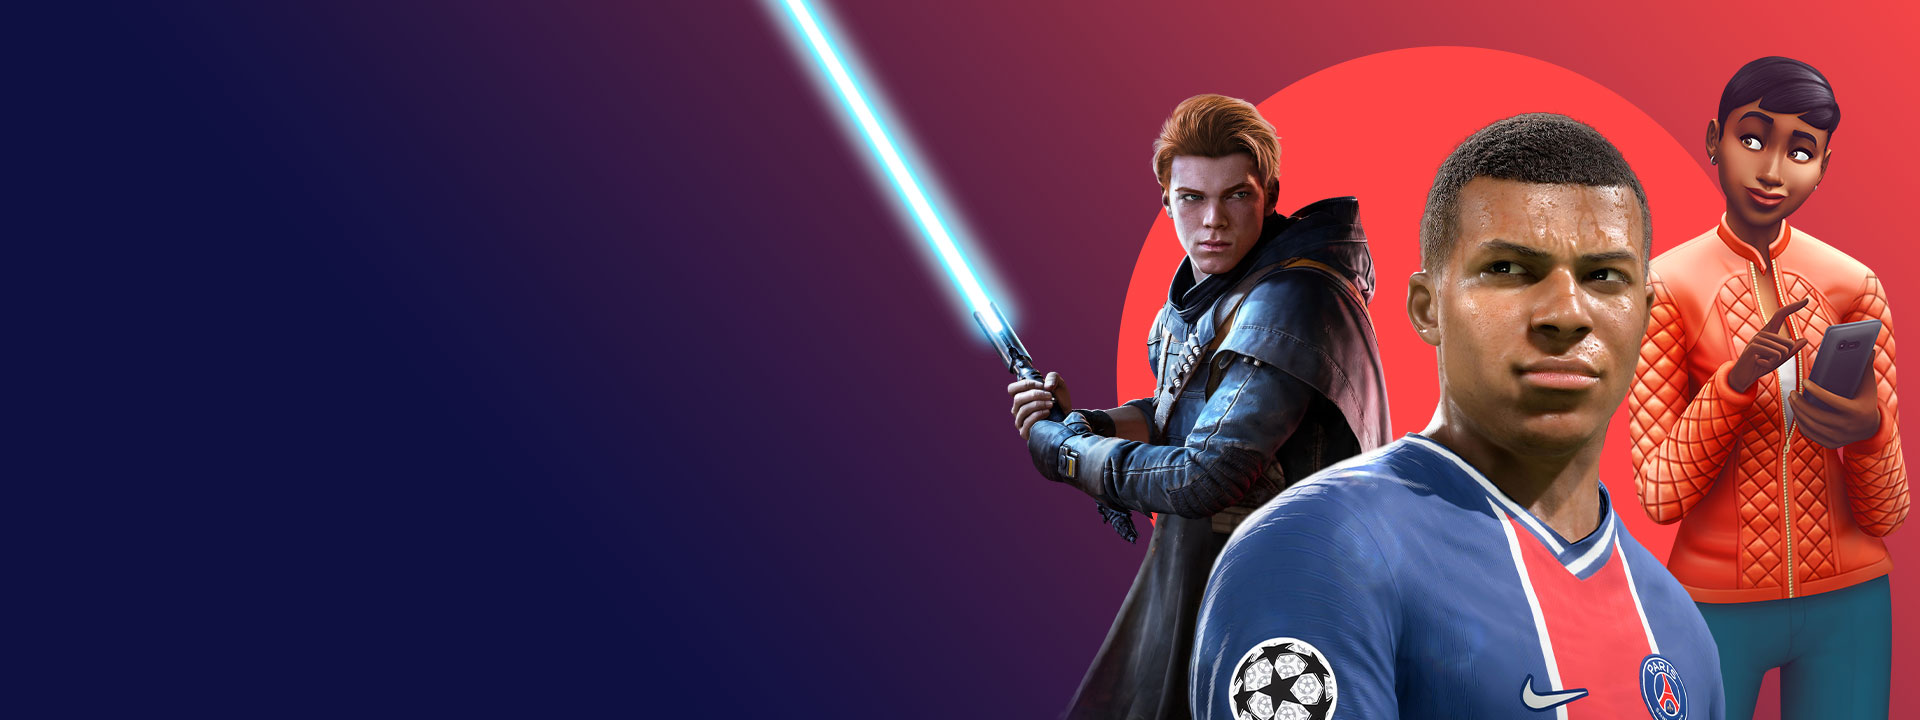 Grafiki z gier studia EA dostępnych w Xbox Game Pass, takich jak Star Wars Jedi: Upadły zakon, FIFA 22 i The Sims 4.